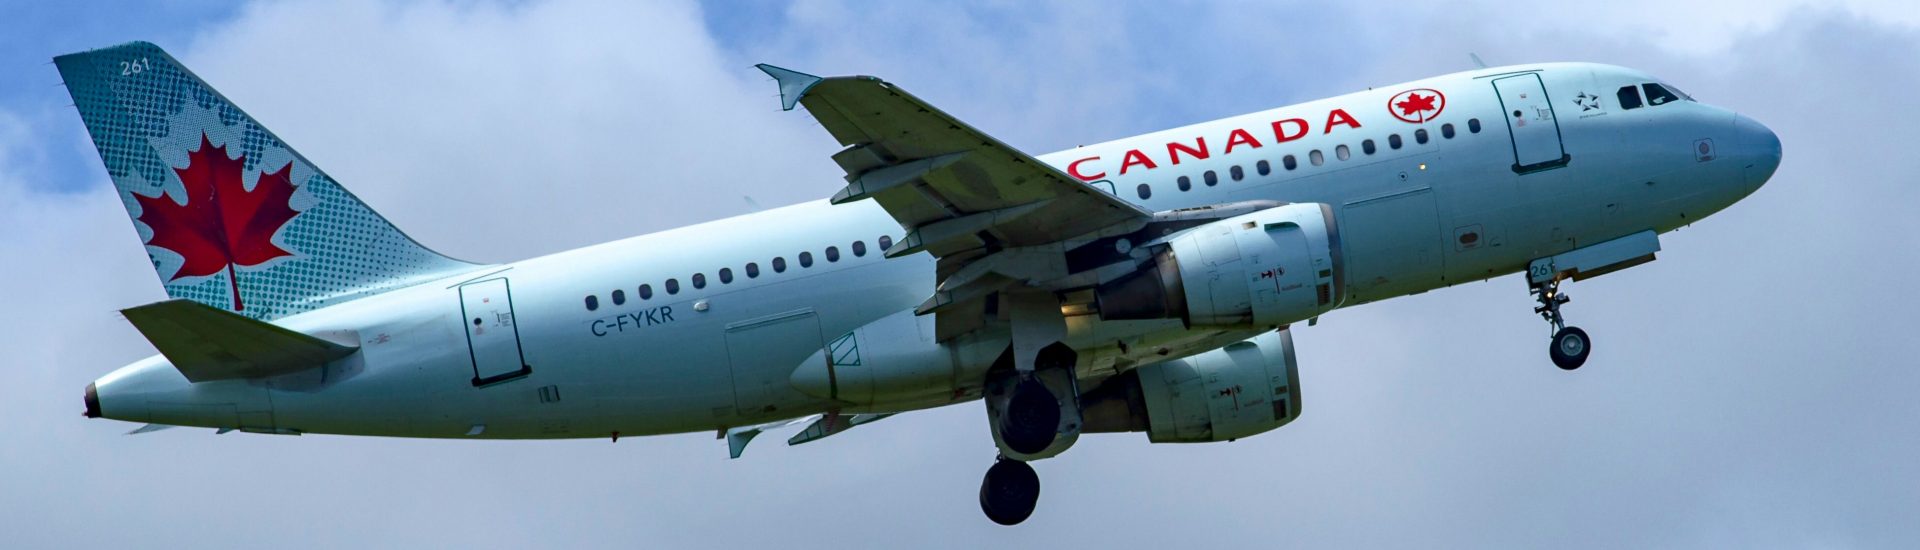 A319-100 Air Canada C-FYKR